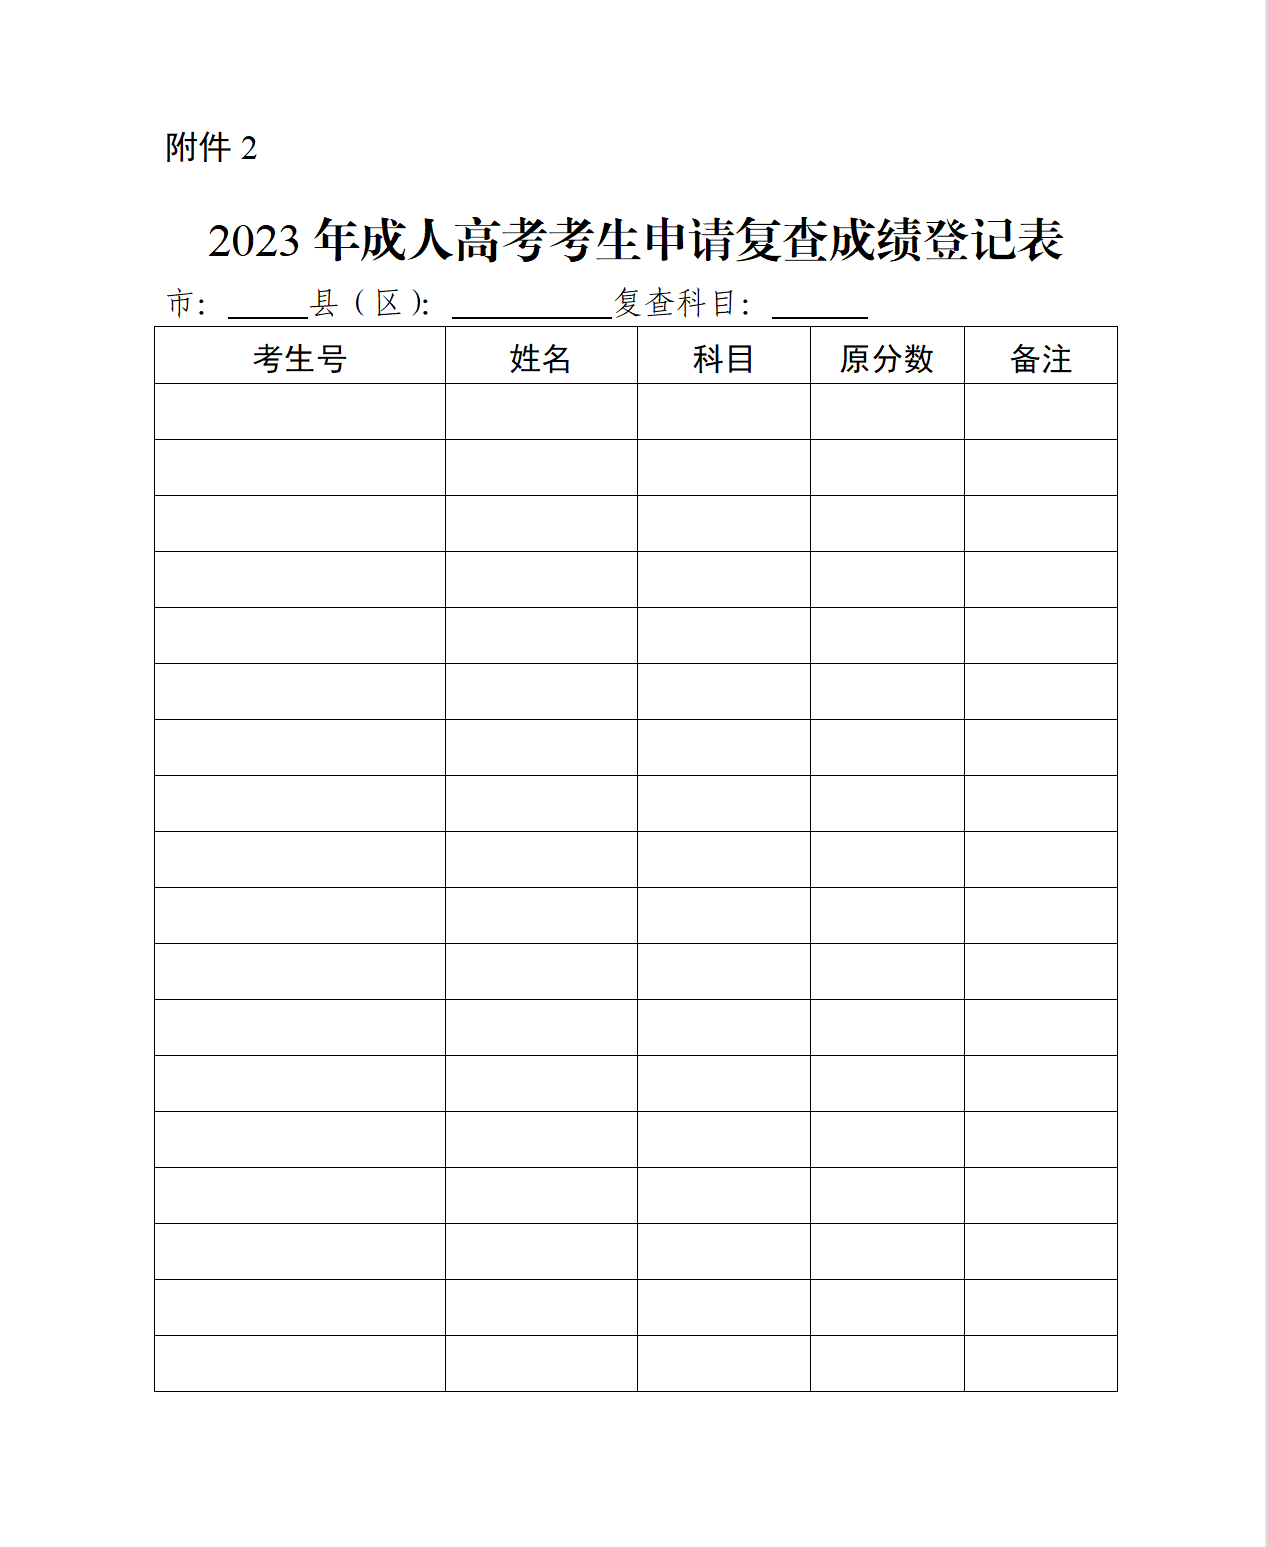 2023年东莞成人高考塘厦镇成绩公布(图1)